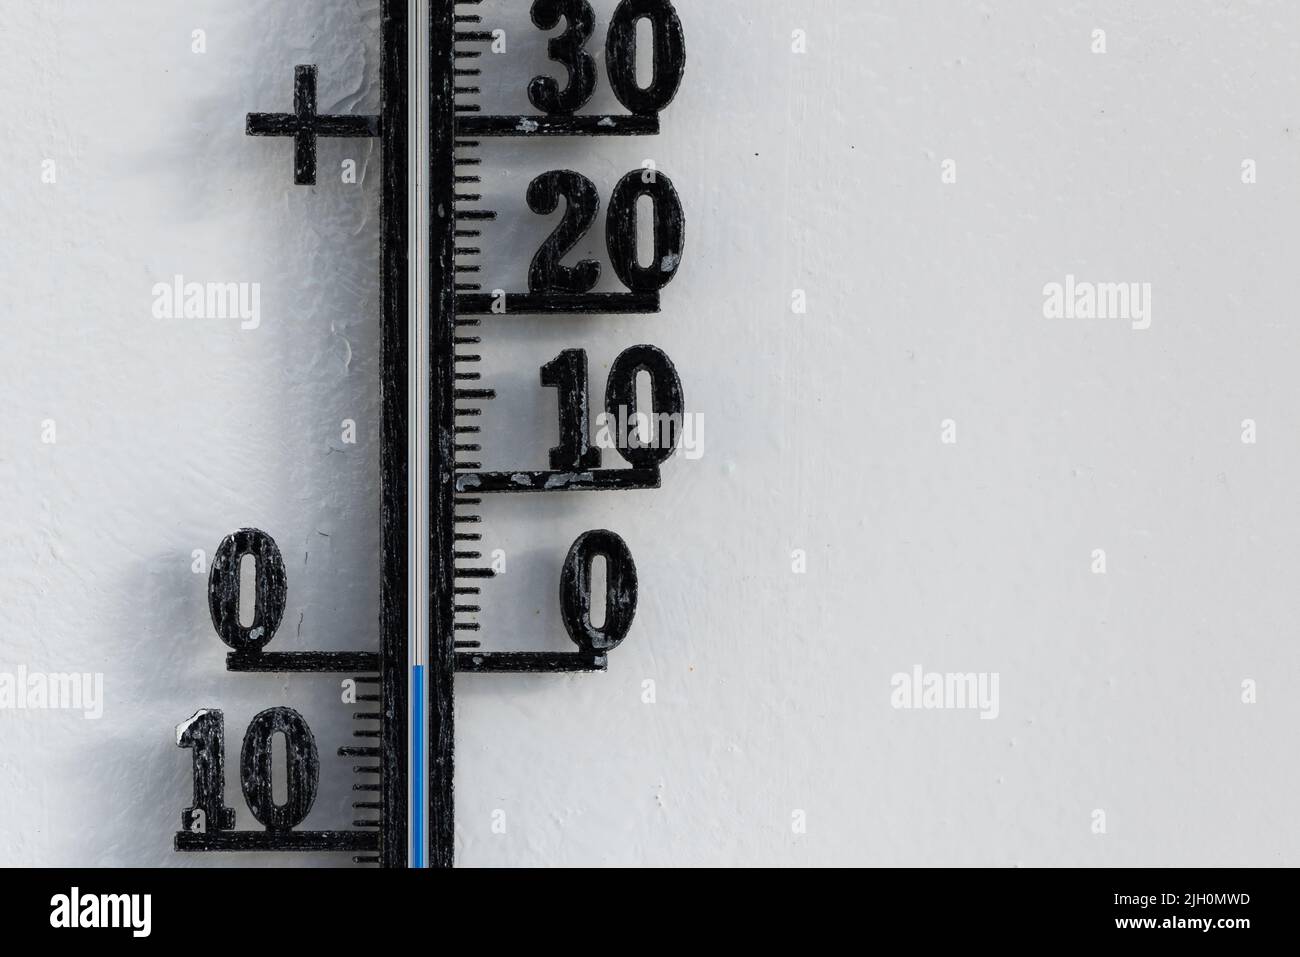 Termómetro analógico negro clásico colgado en la pared blanca que muestra una escala de temperatura azul de cero, 0 grados centígrados Foto de stock